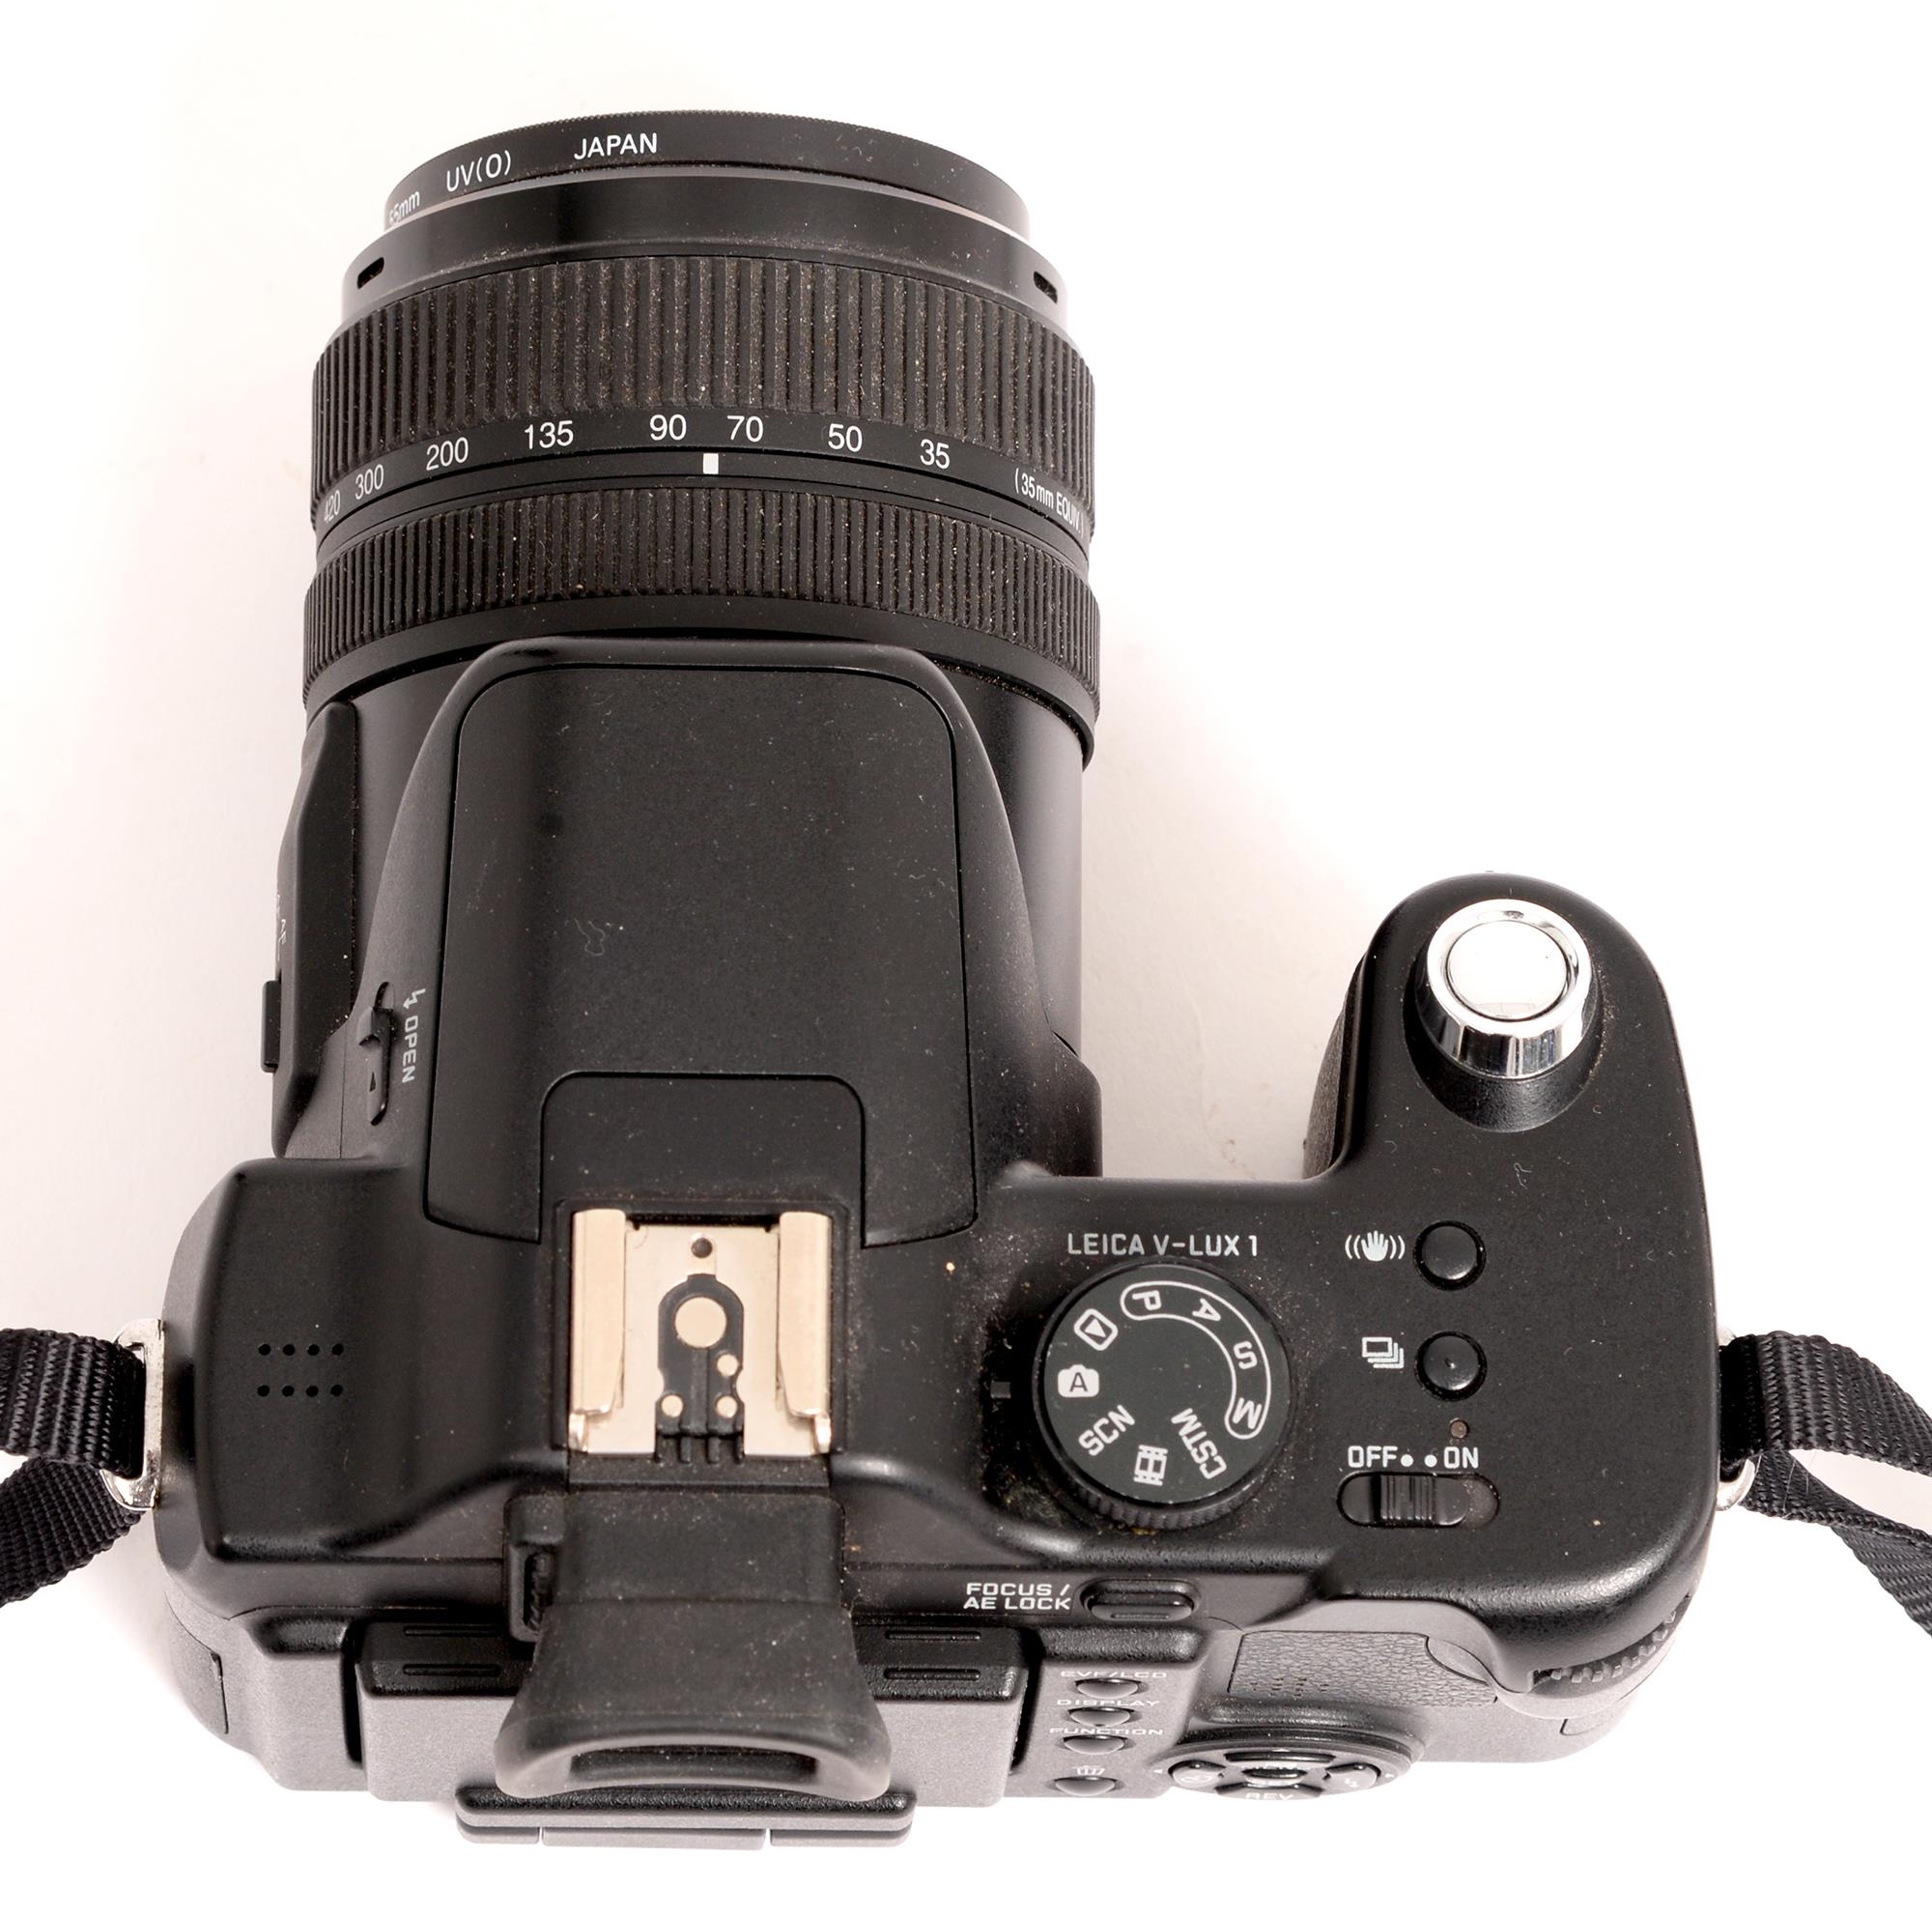 A Leica V-LUX1 digital camera, serial No 3138098, maker's DC Vario-Elmarit F2.8-3.7/7.4-88.8mm lens - Image 3 of 3